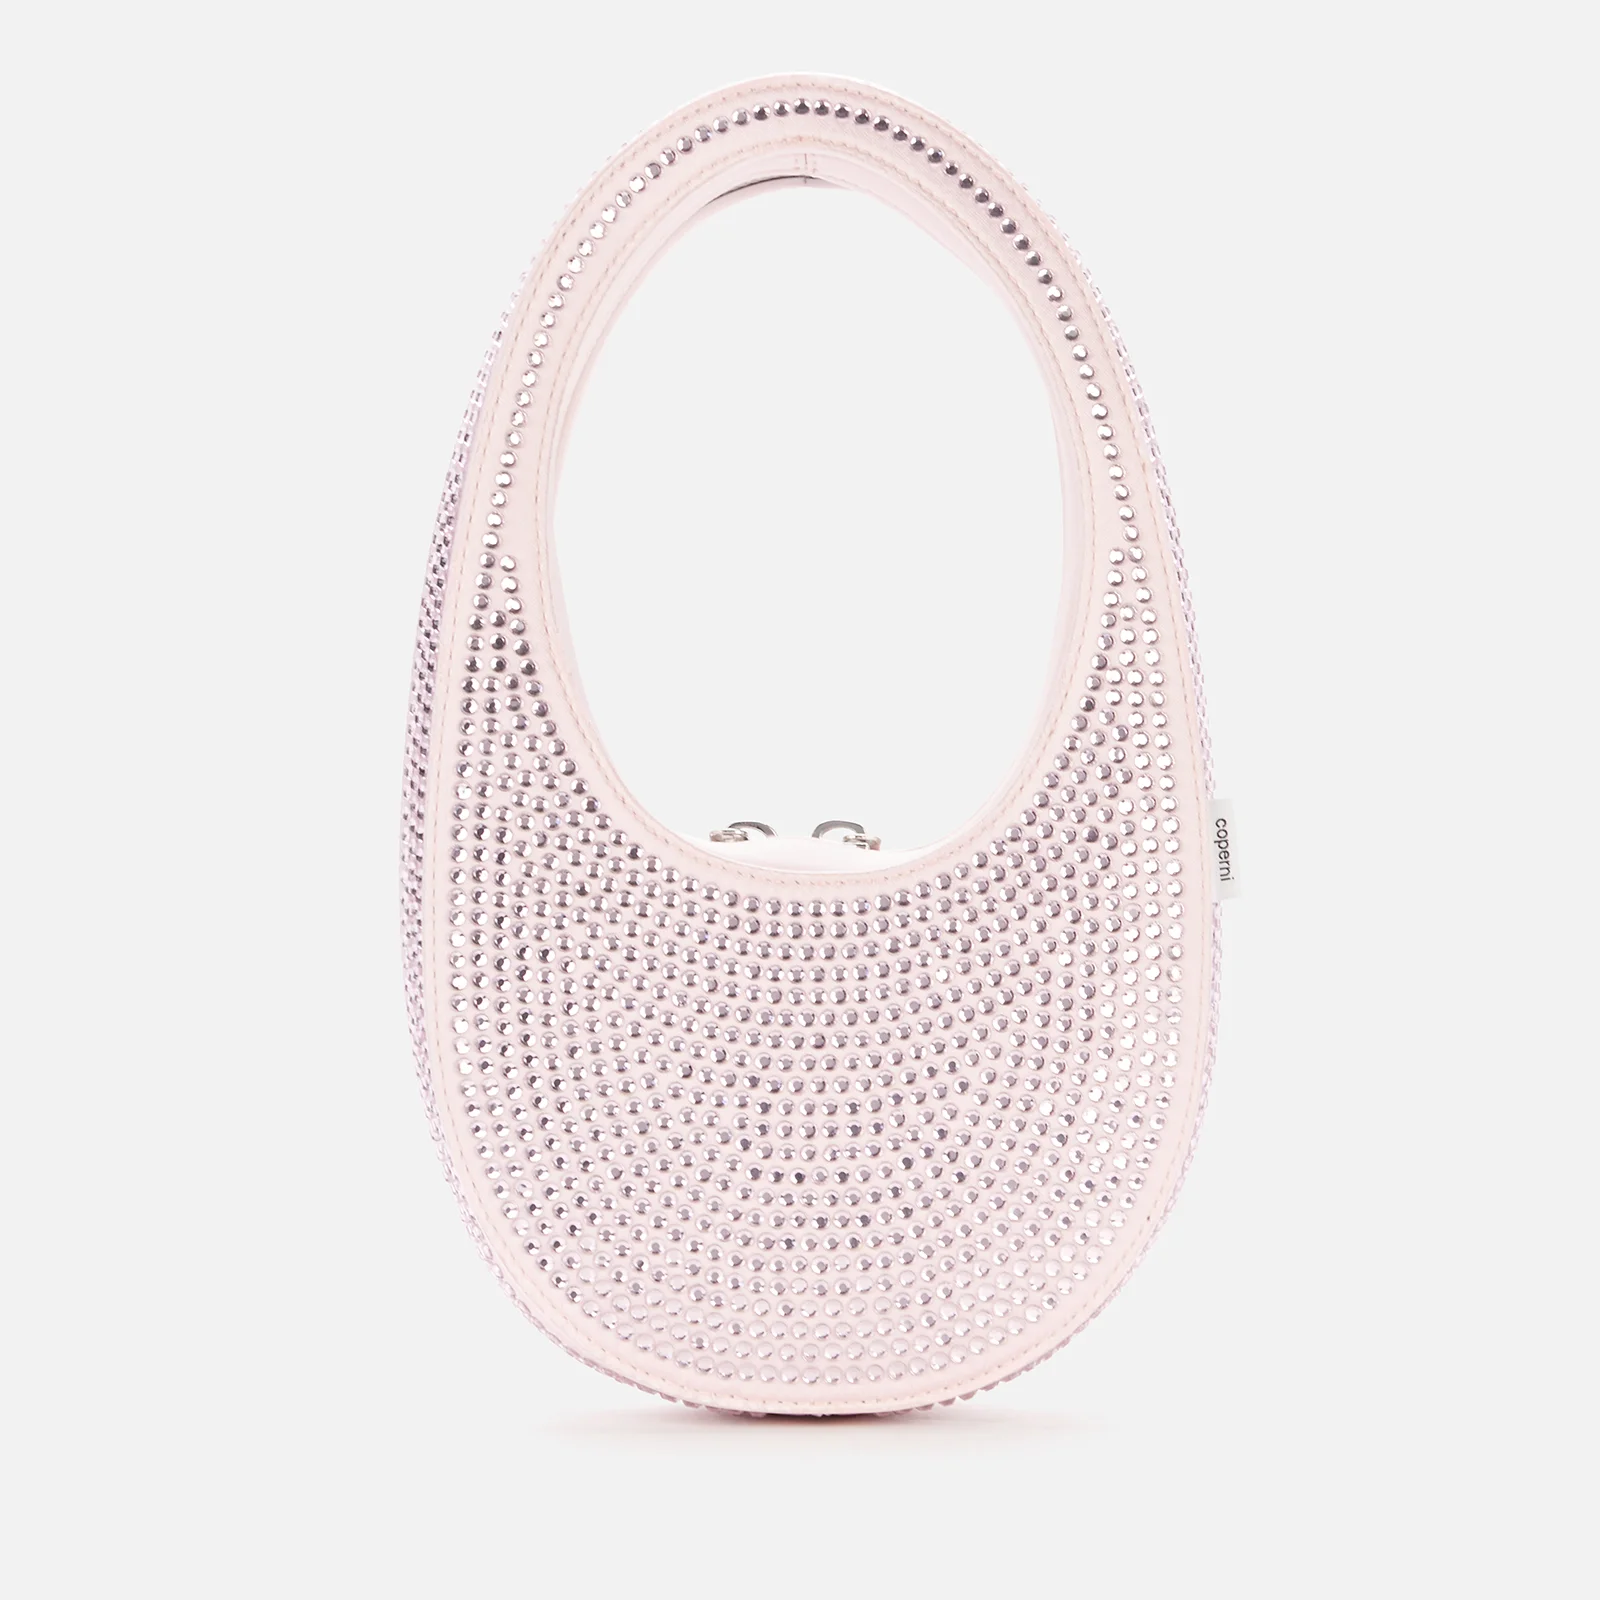 Coperni Women's Mini Swipe Bag - Light Pink Image 1